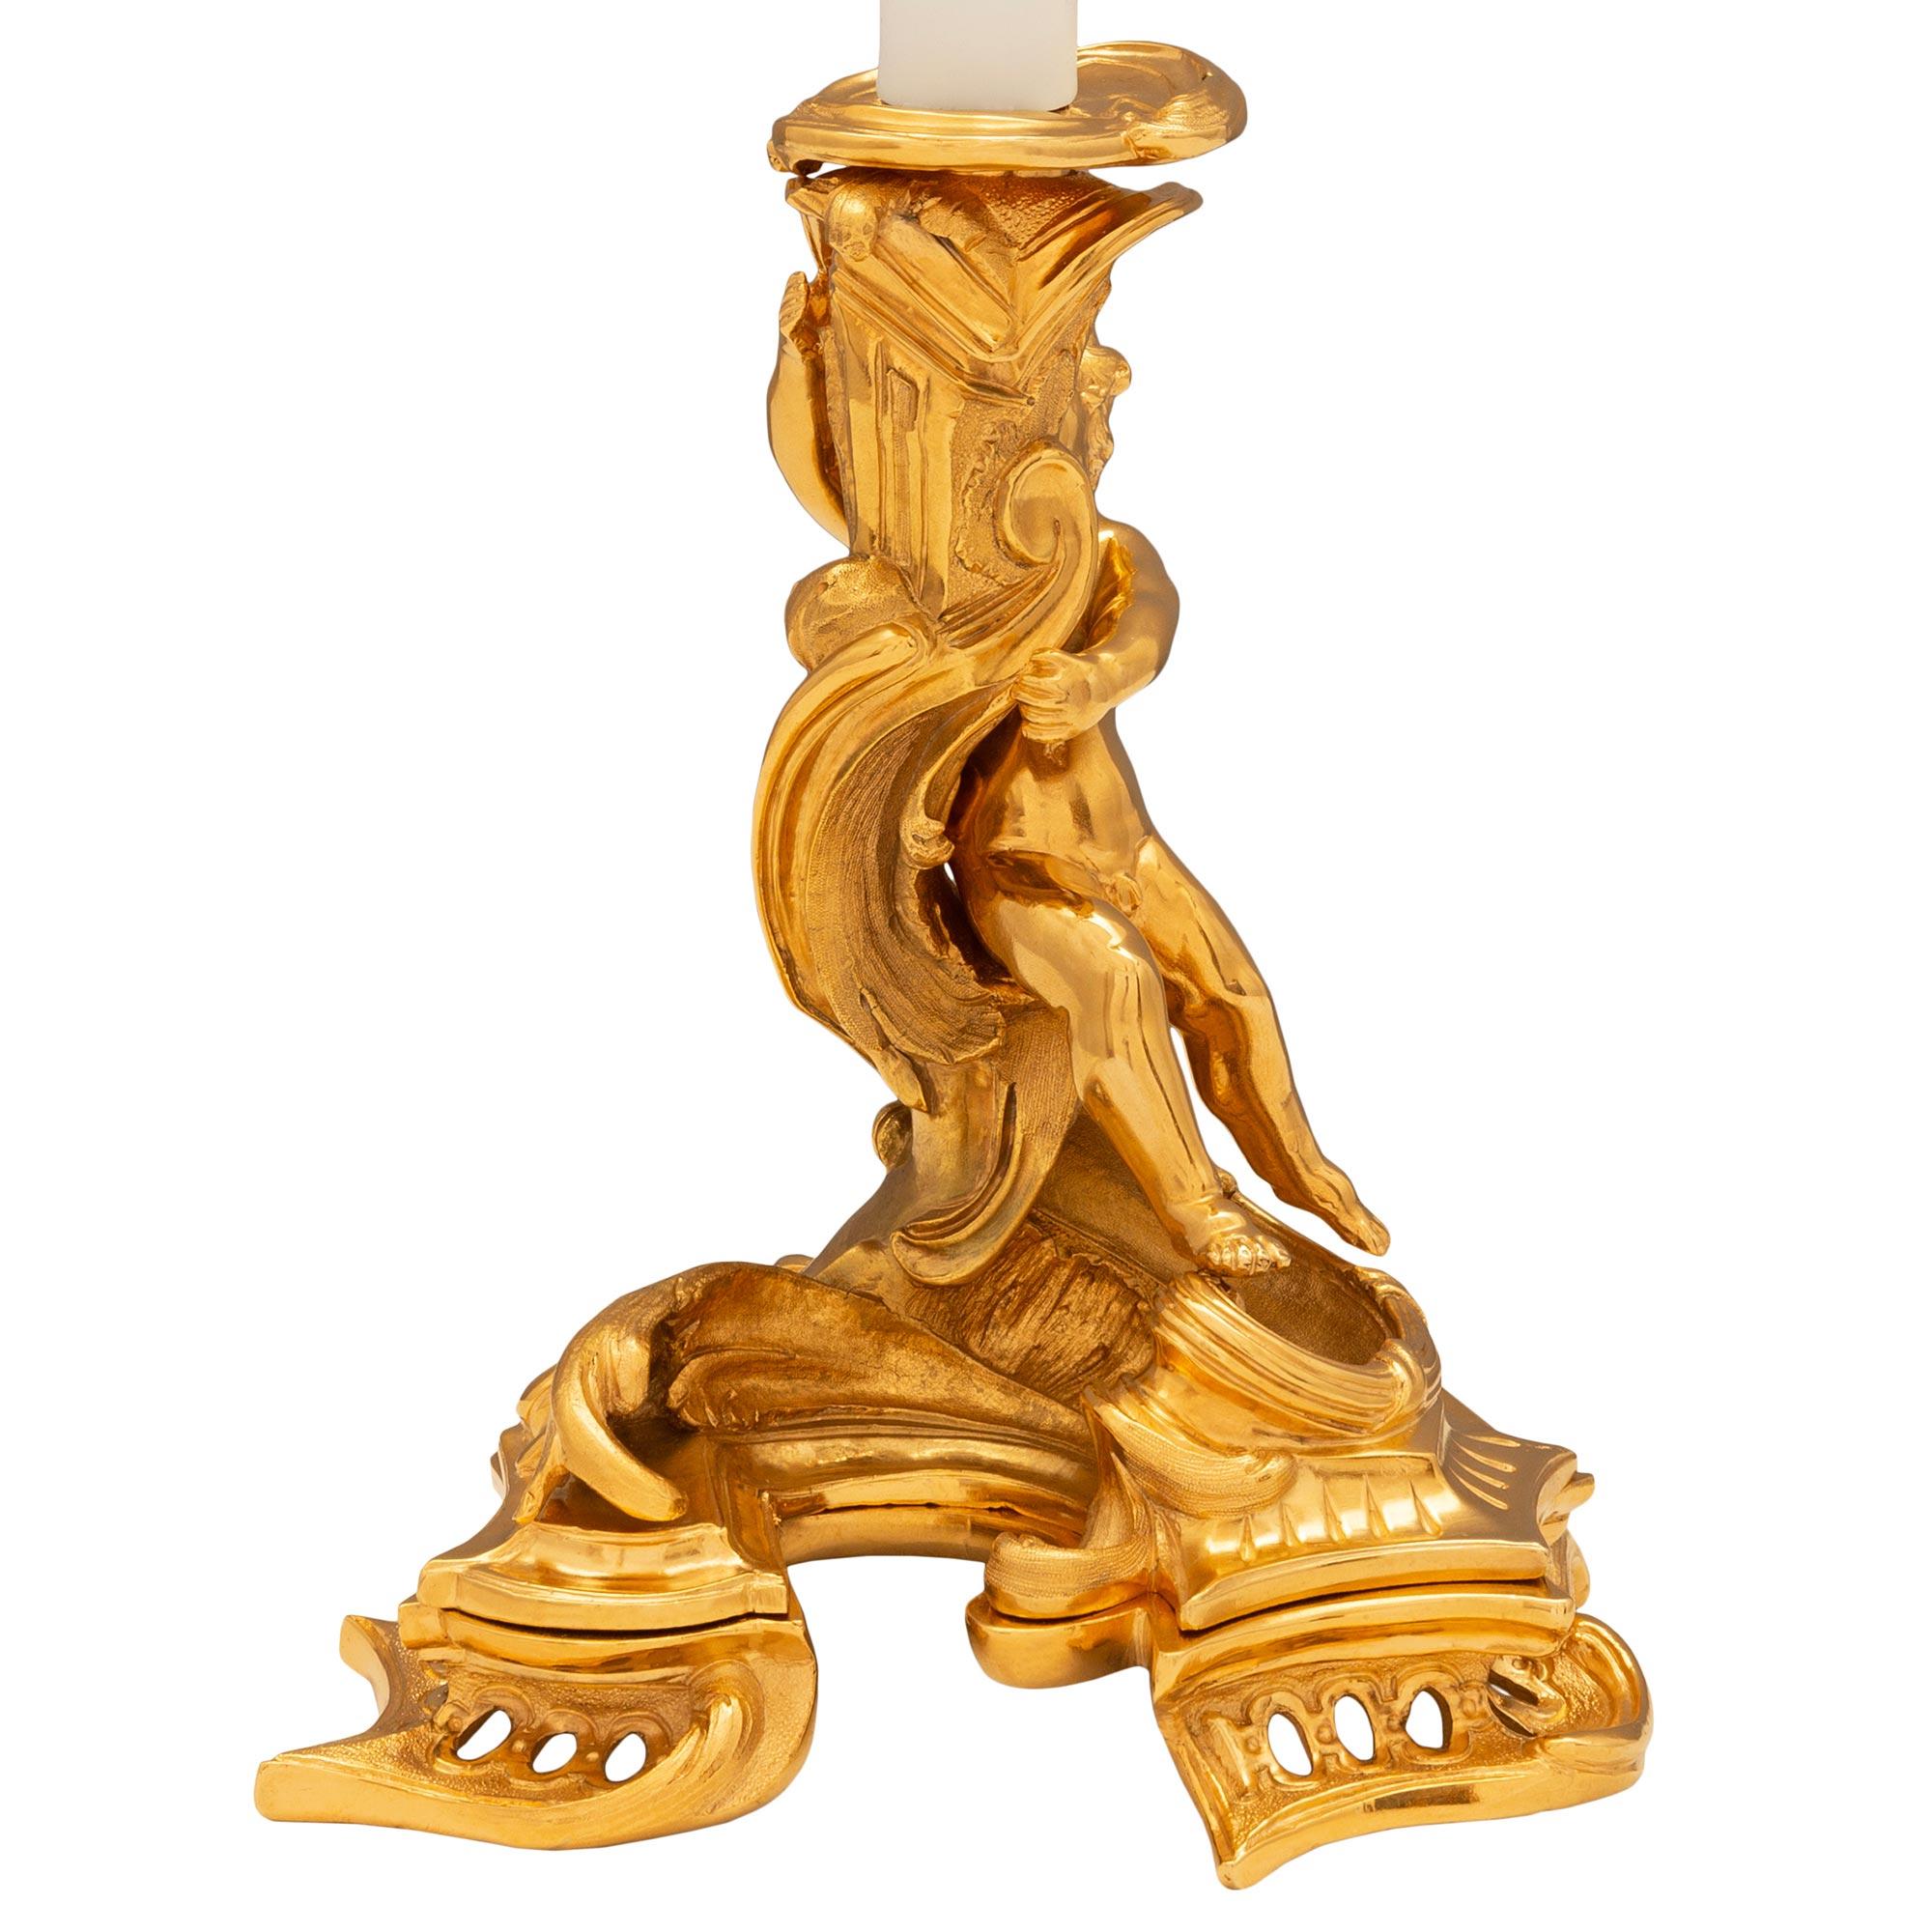 Une étonnante et impressionnante paire de lampes-bougies en bronze doré de style Louis XV du XIXe siècle. Chaque lampe est soutenue par une base à trois côtés avec des motifs de volutes de Rocaille percés. Le corps de chaque lampe représente un